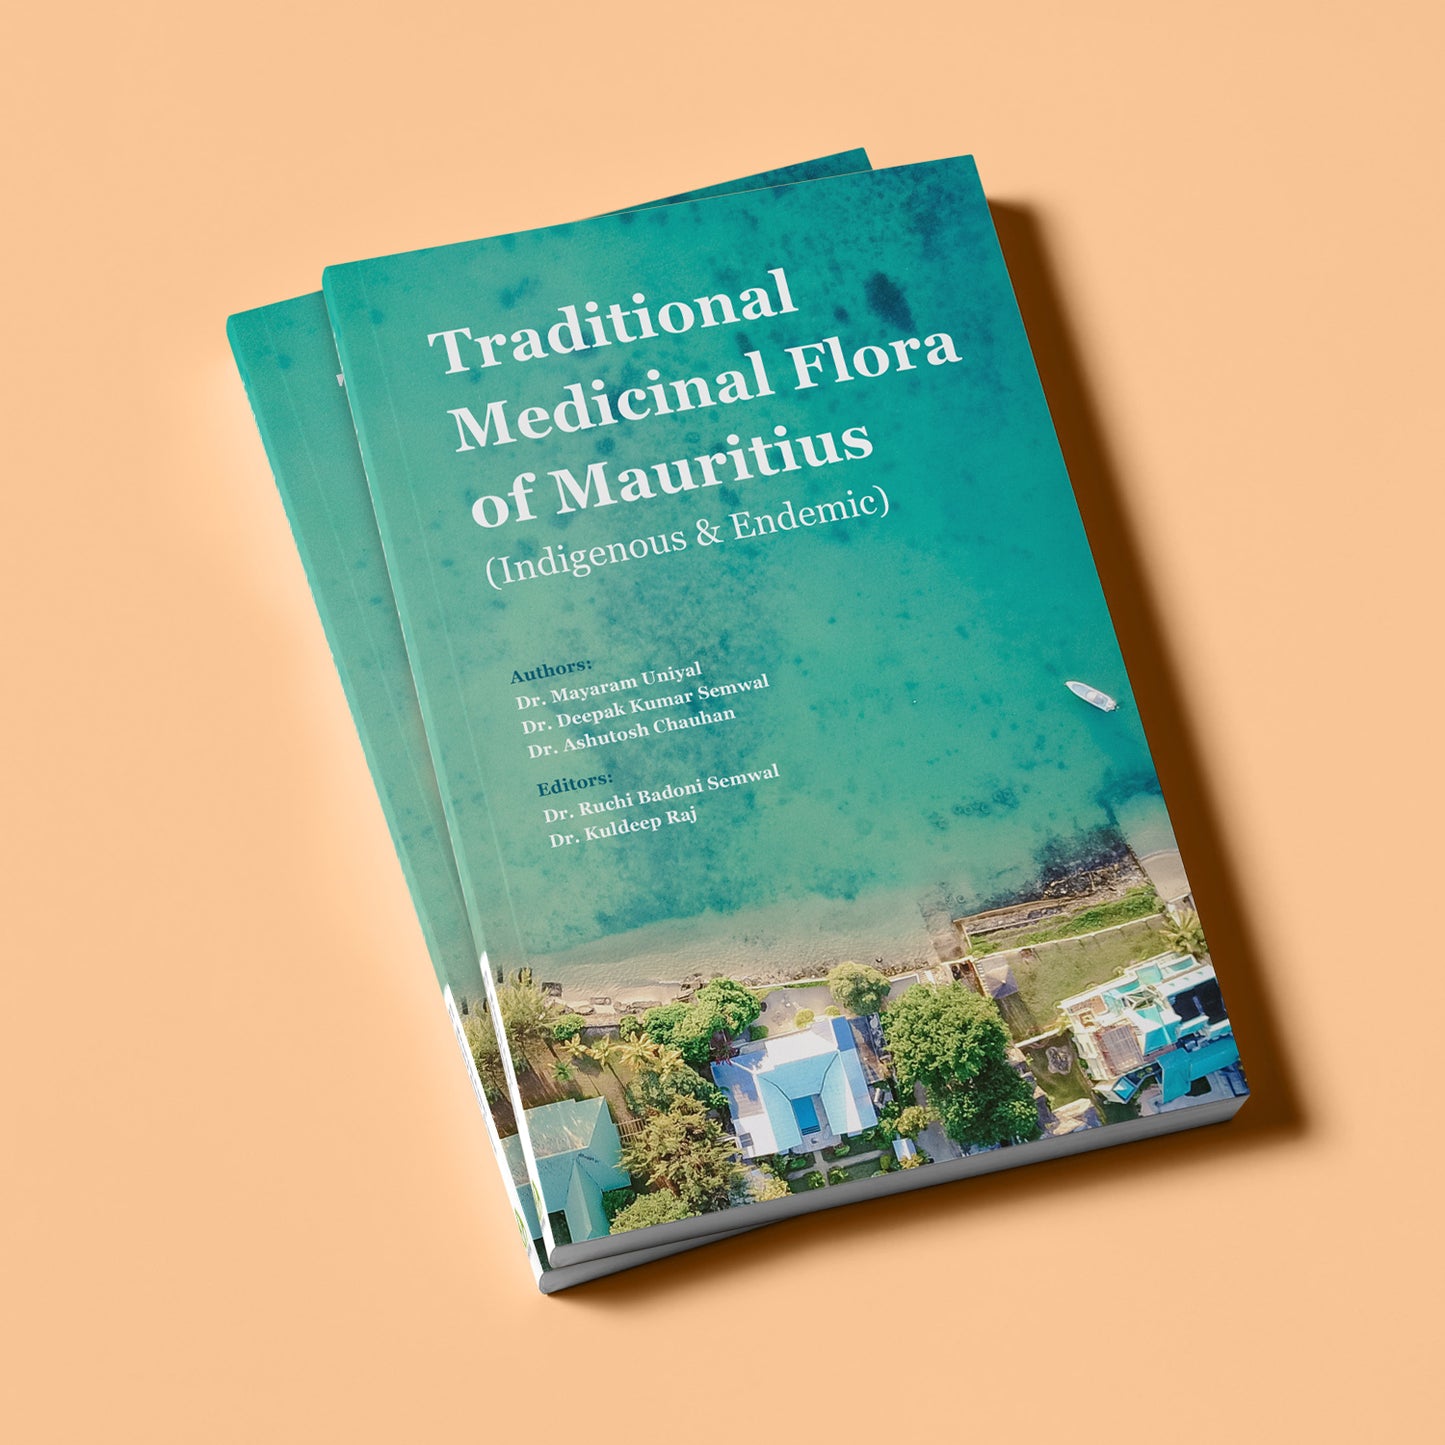 Traditional Medicinal Flora of Mauritius